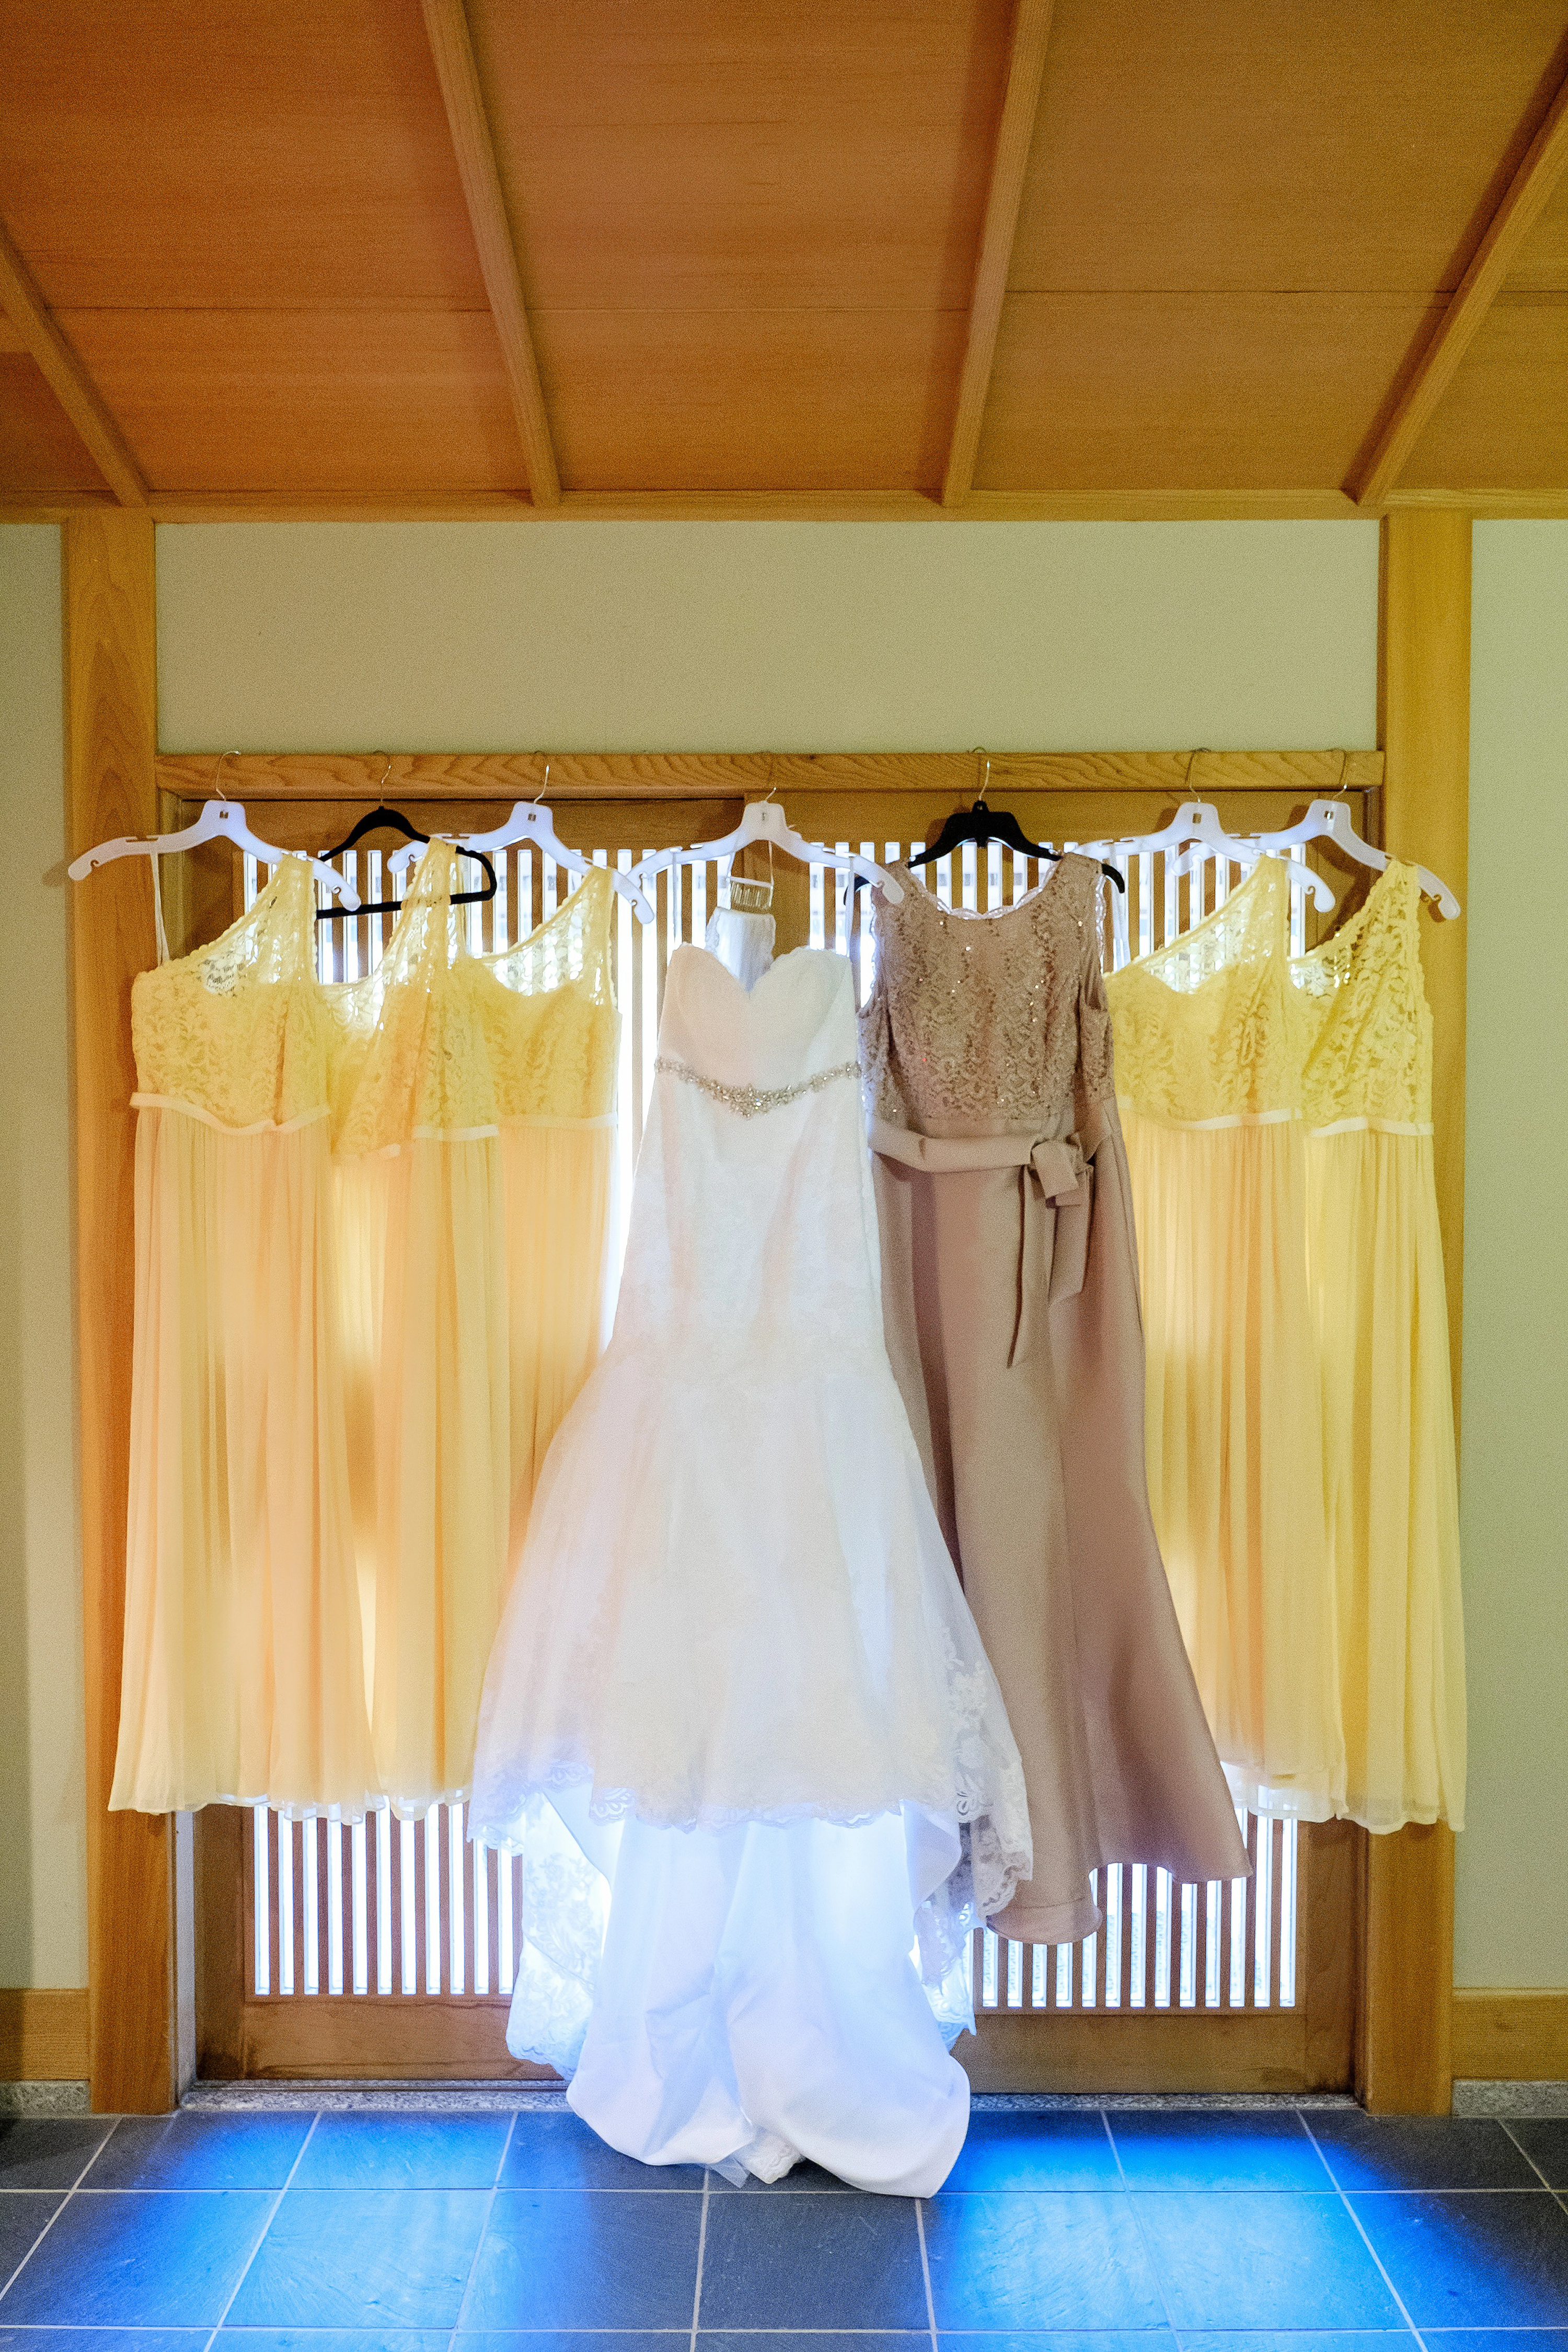 japanese friendship garden wedding phoenix,japanese garden wedding venue,Bride and bridesmaids dresses hanging up